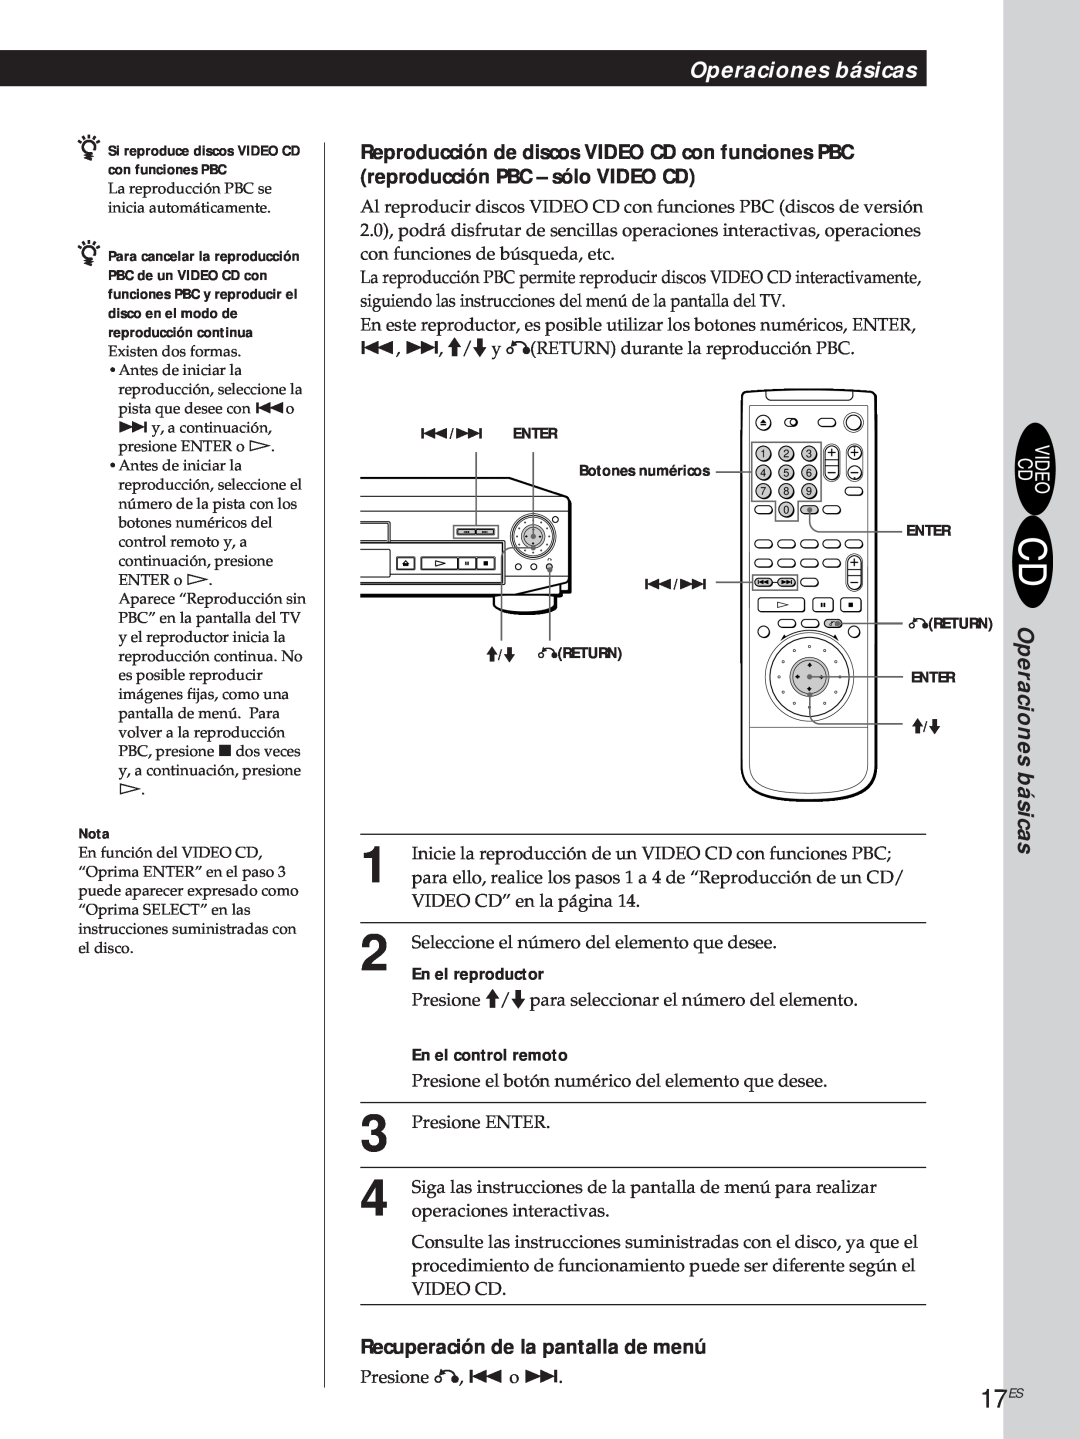 Sony DVP-S500D manual 17ES, Reproducción de discos VIDEO CD con funciones PBC, reproducción PBC - sólo VIDEO CD 